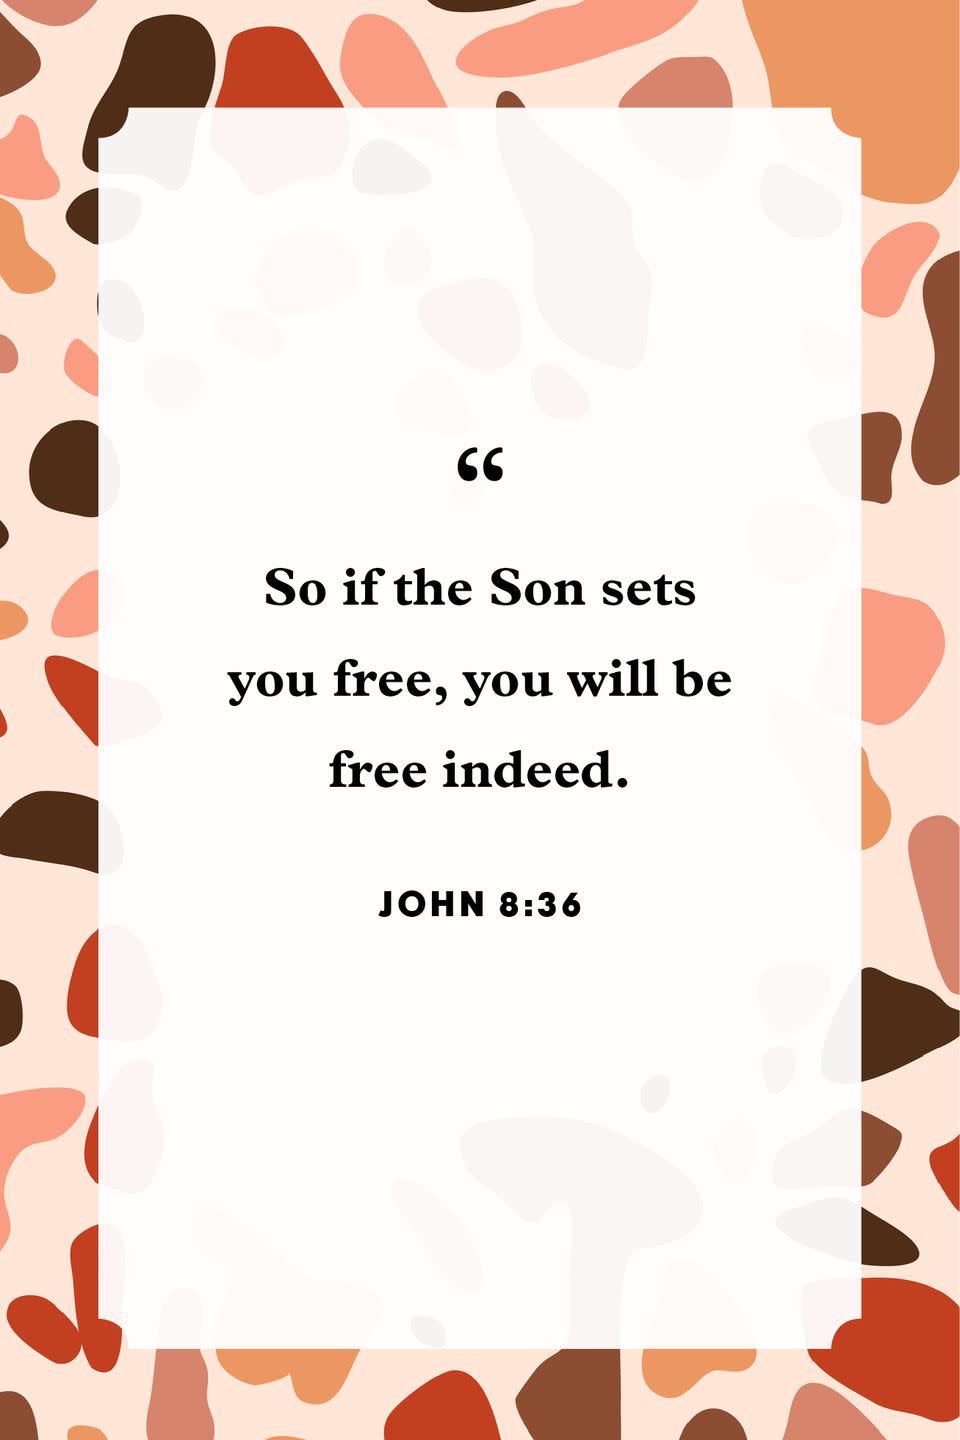 18) John 8:36